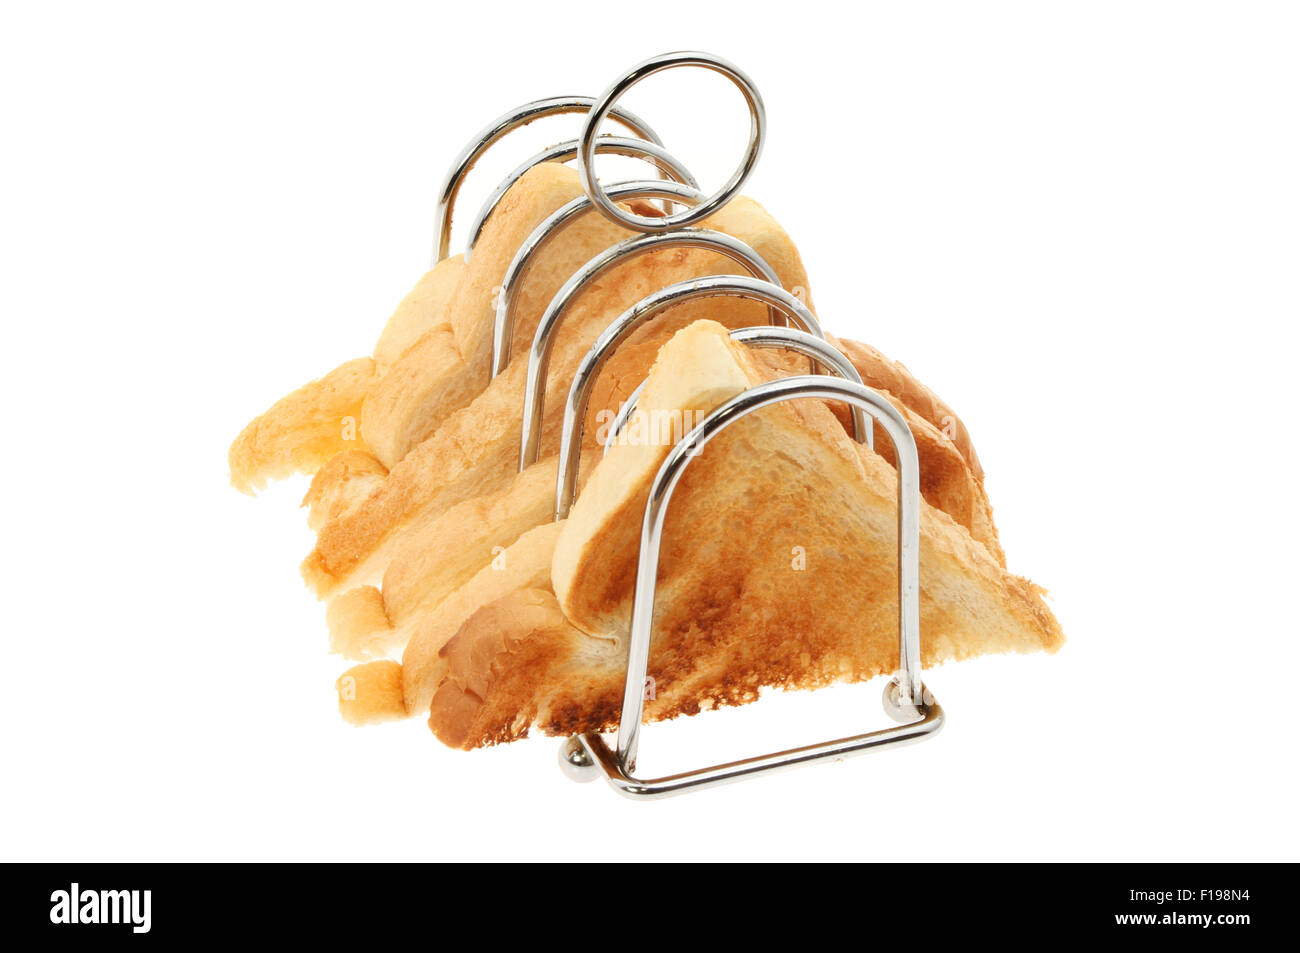 Tranches de pain grillé dans un rack toast blanc isolé contre Banque D'Images